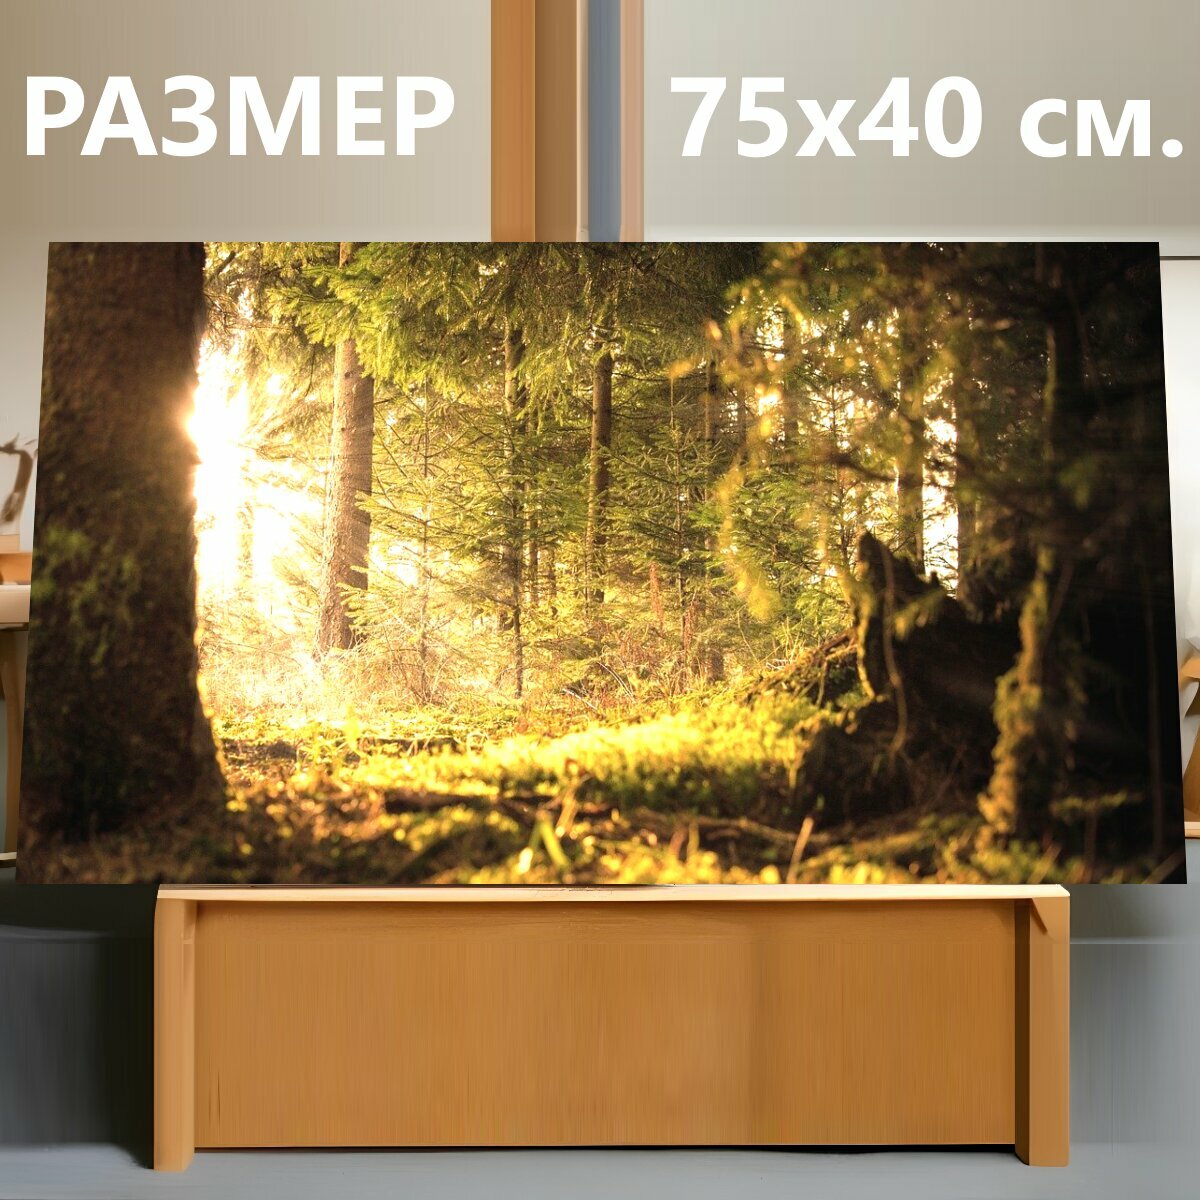 Картина на холсте "Лес, солнце, светить" на подрамнике 75х40 см. для интерьера